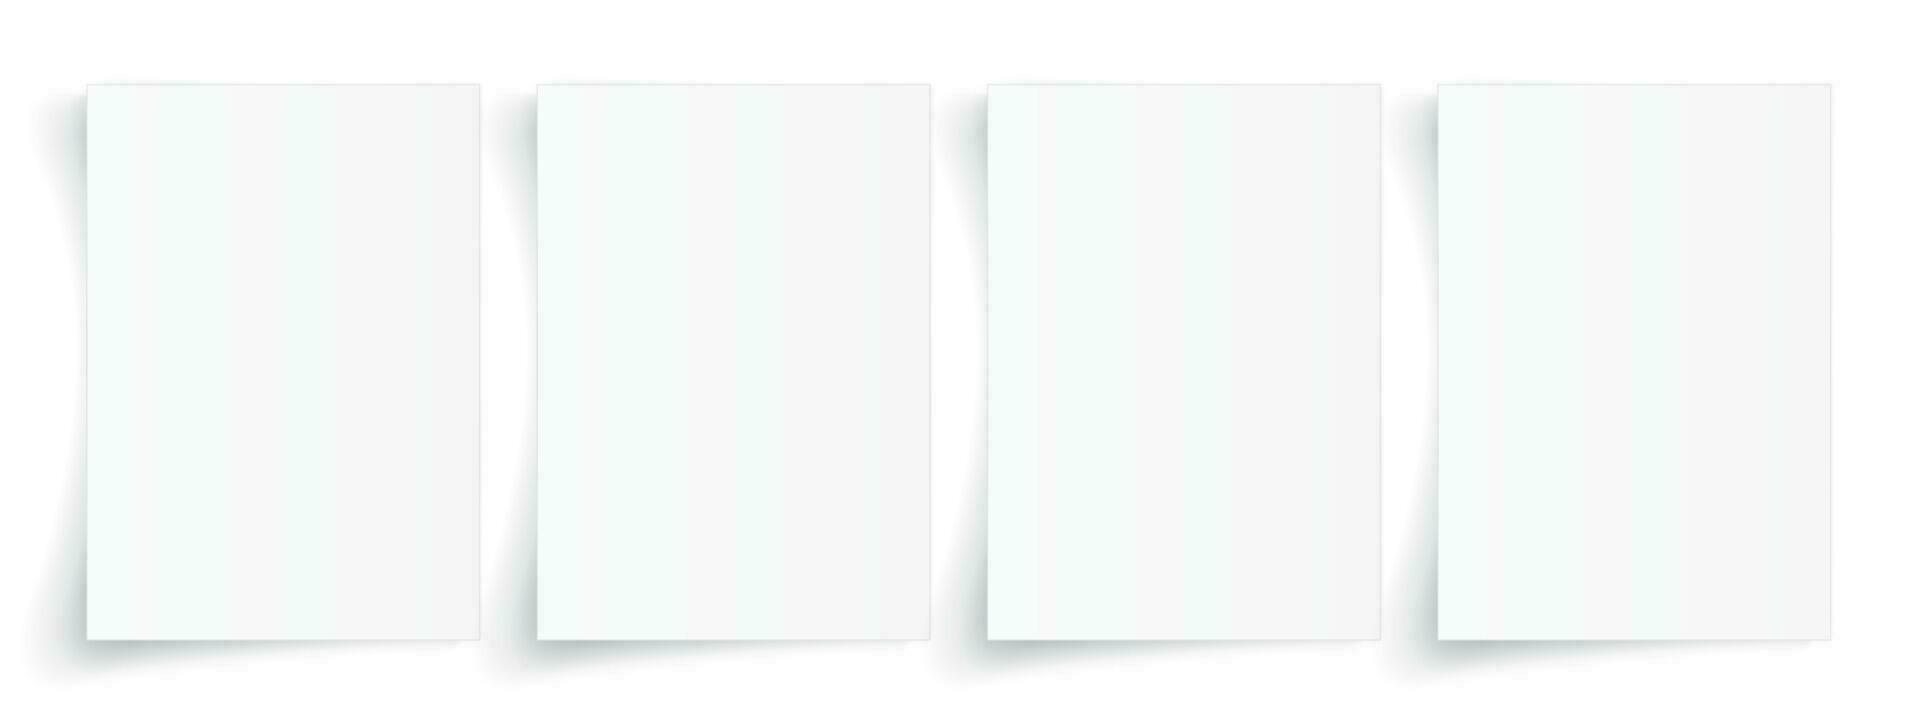 tom a4 ark av vit papper med skugga, mall för din design. uppsättning. vektor illustration